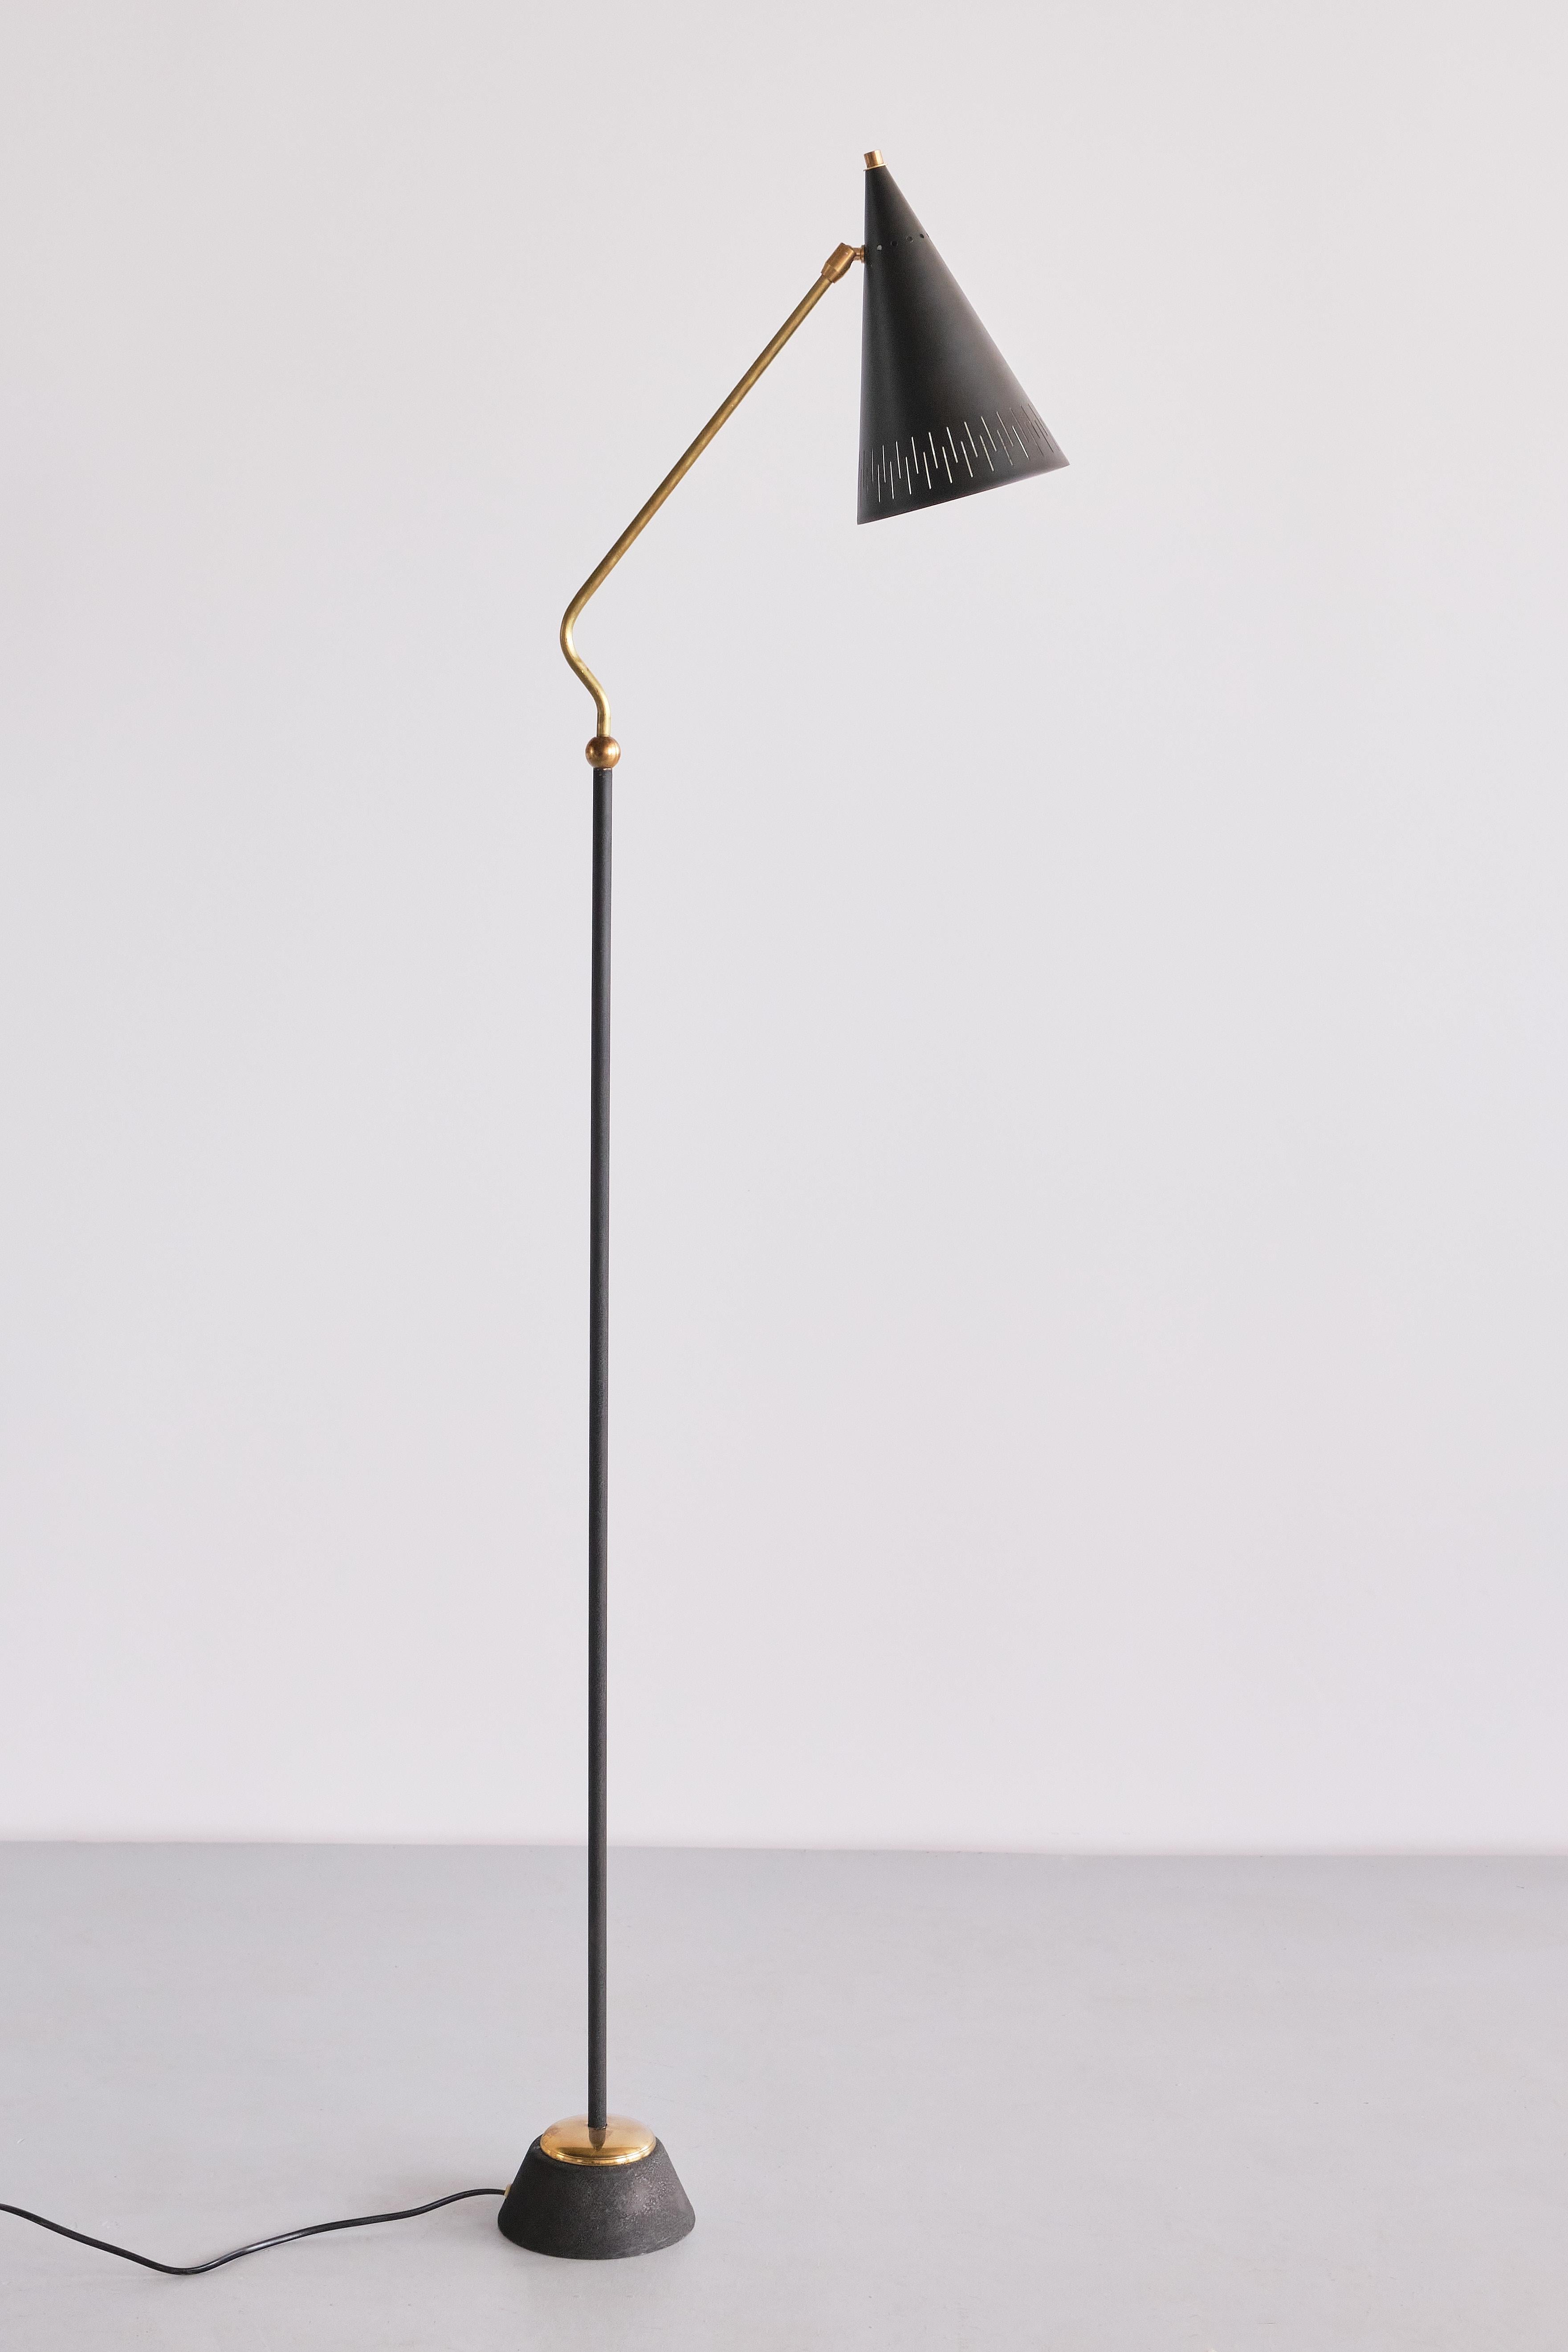 Ce lampadaire The Modern Scandinavian exceptionnellement rare a été produit en Suède dans les années 1950. Le design est attribué à Svend Aage Holm-Sørensen qui a conçu différents modèles pour le constructeur suédois ASEA.

Le design élégant est